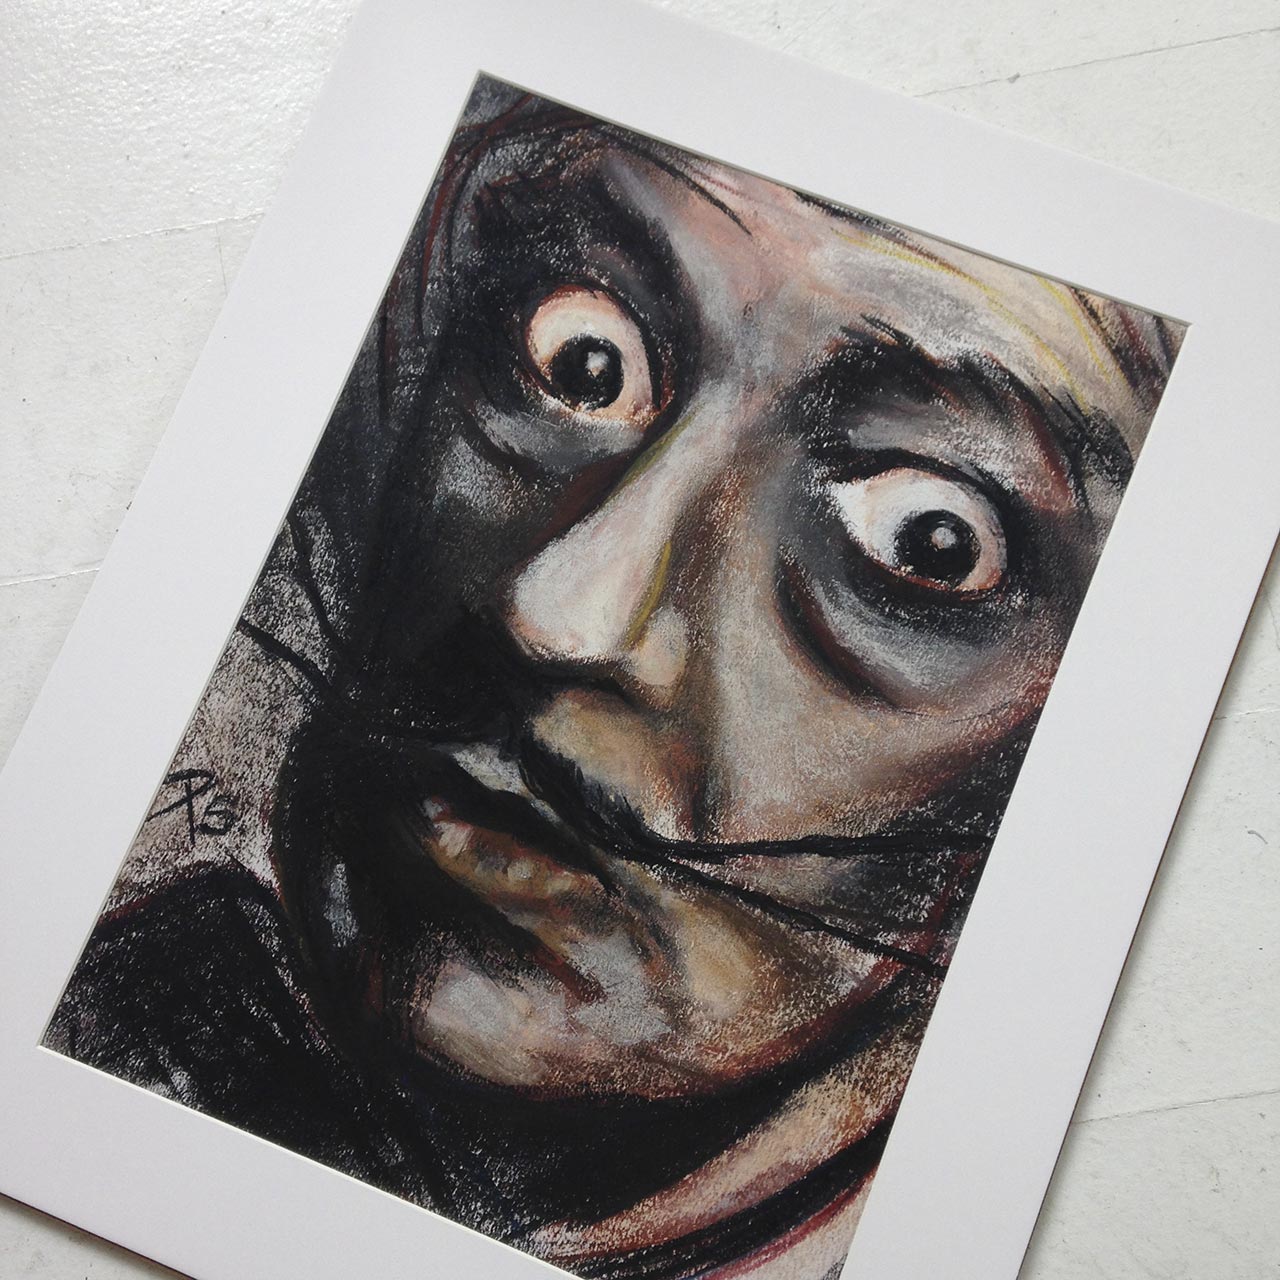 Portrættegning i kridt af Salvador Dali udført af portrættegner Peter Simonsen